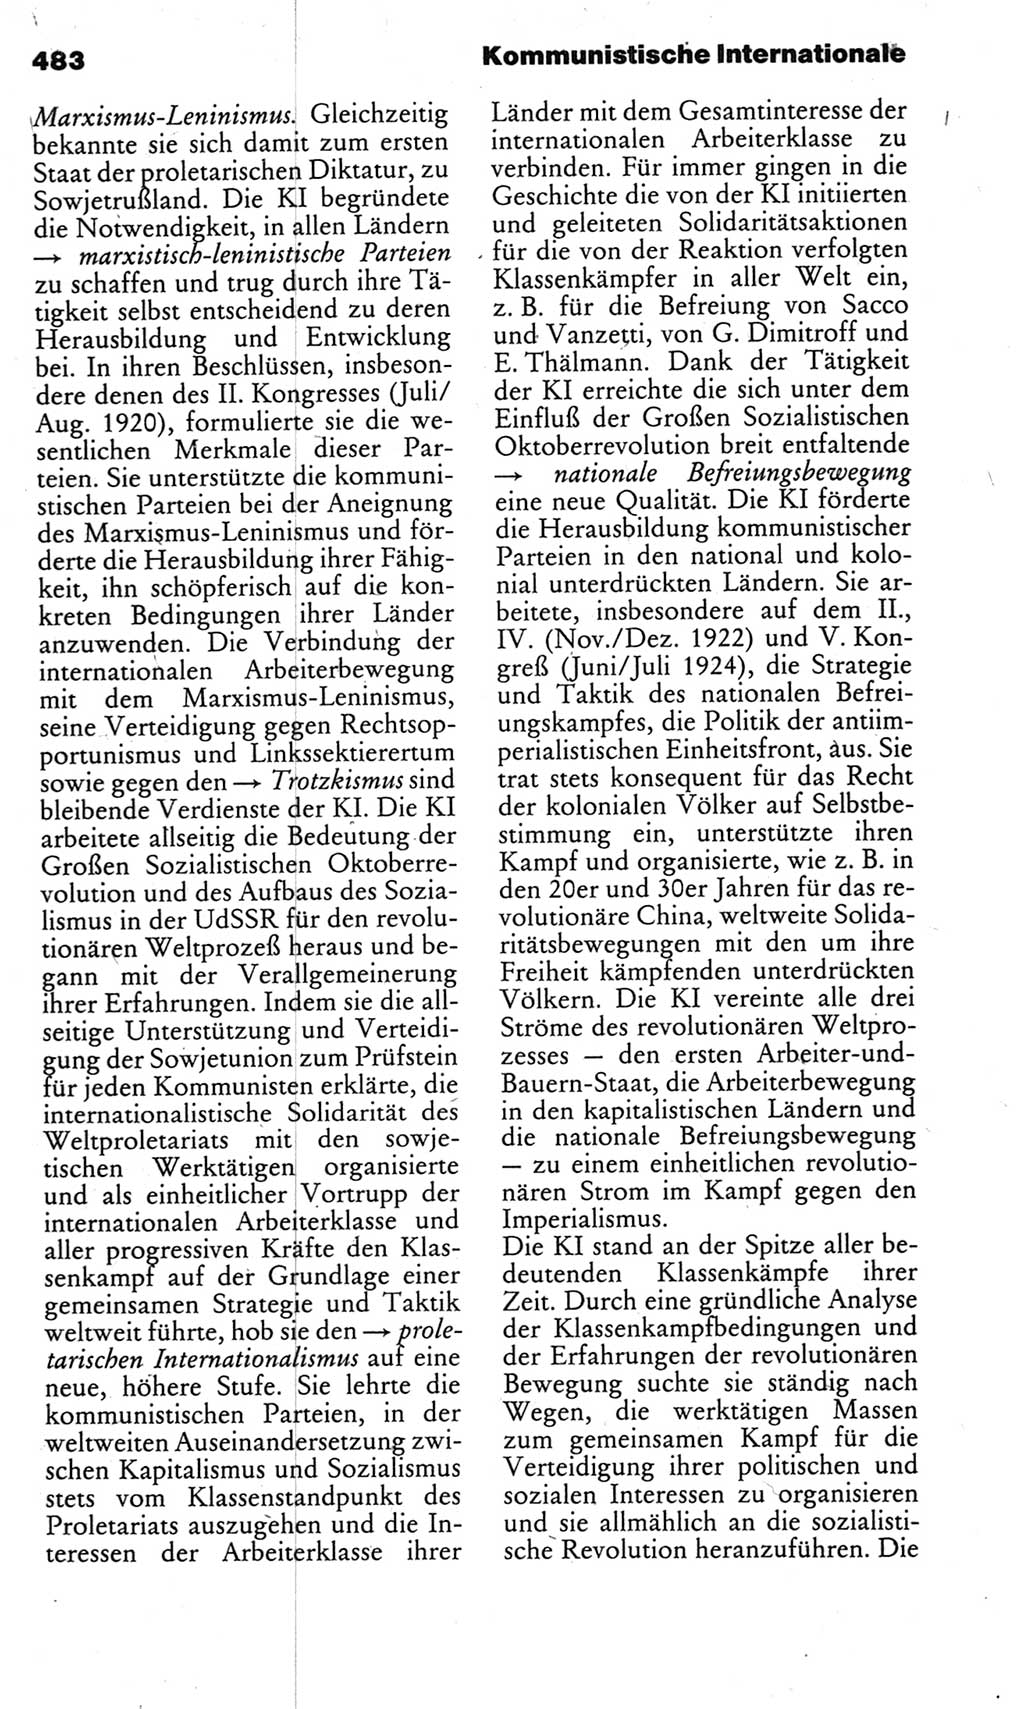 Kleines politisches Wörterbuch [Deutsche Demokratische Republik (DDR)] 1983, Seite 483 (Kl. pol. Wb. DDR 1983, S. 483)